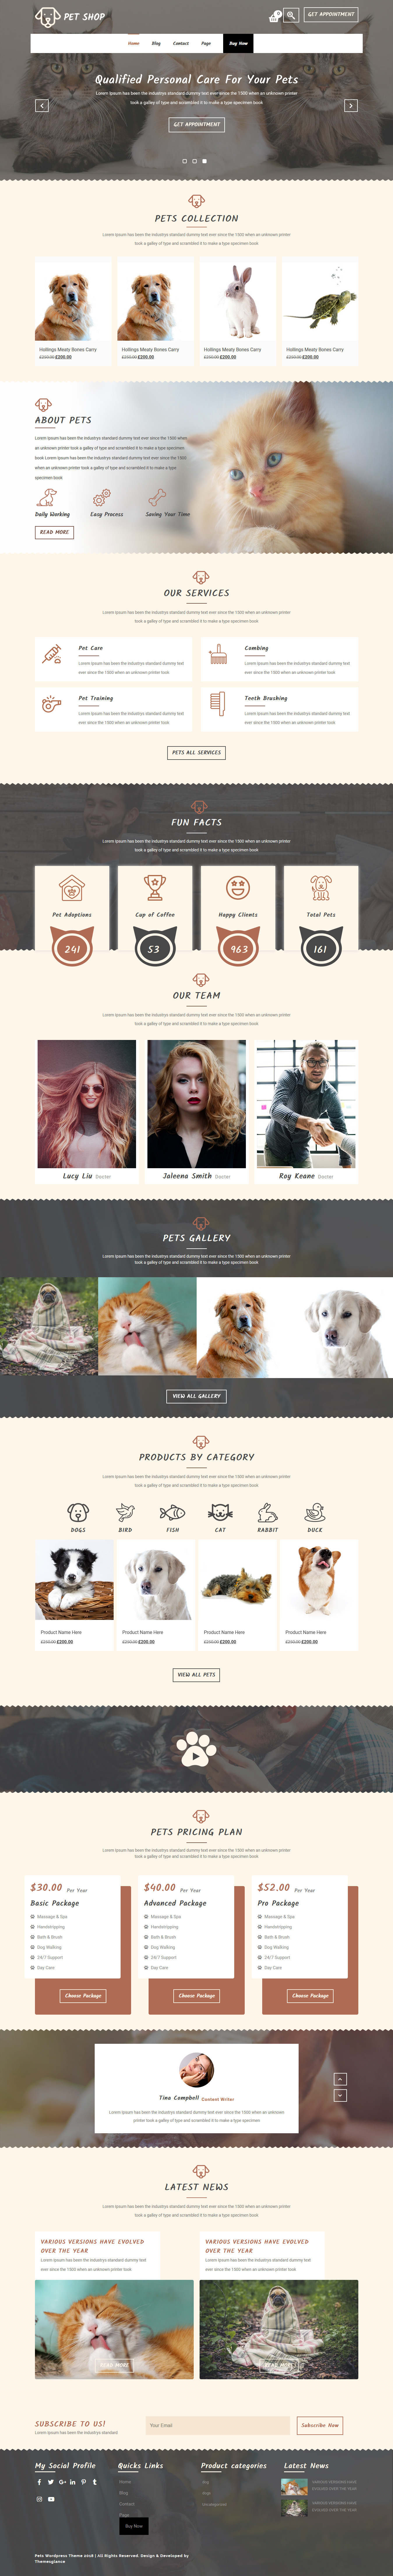 Tienda de mascotas - Los mejores temas gratuitos de WordPress para animales y mascotas